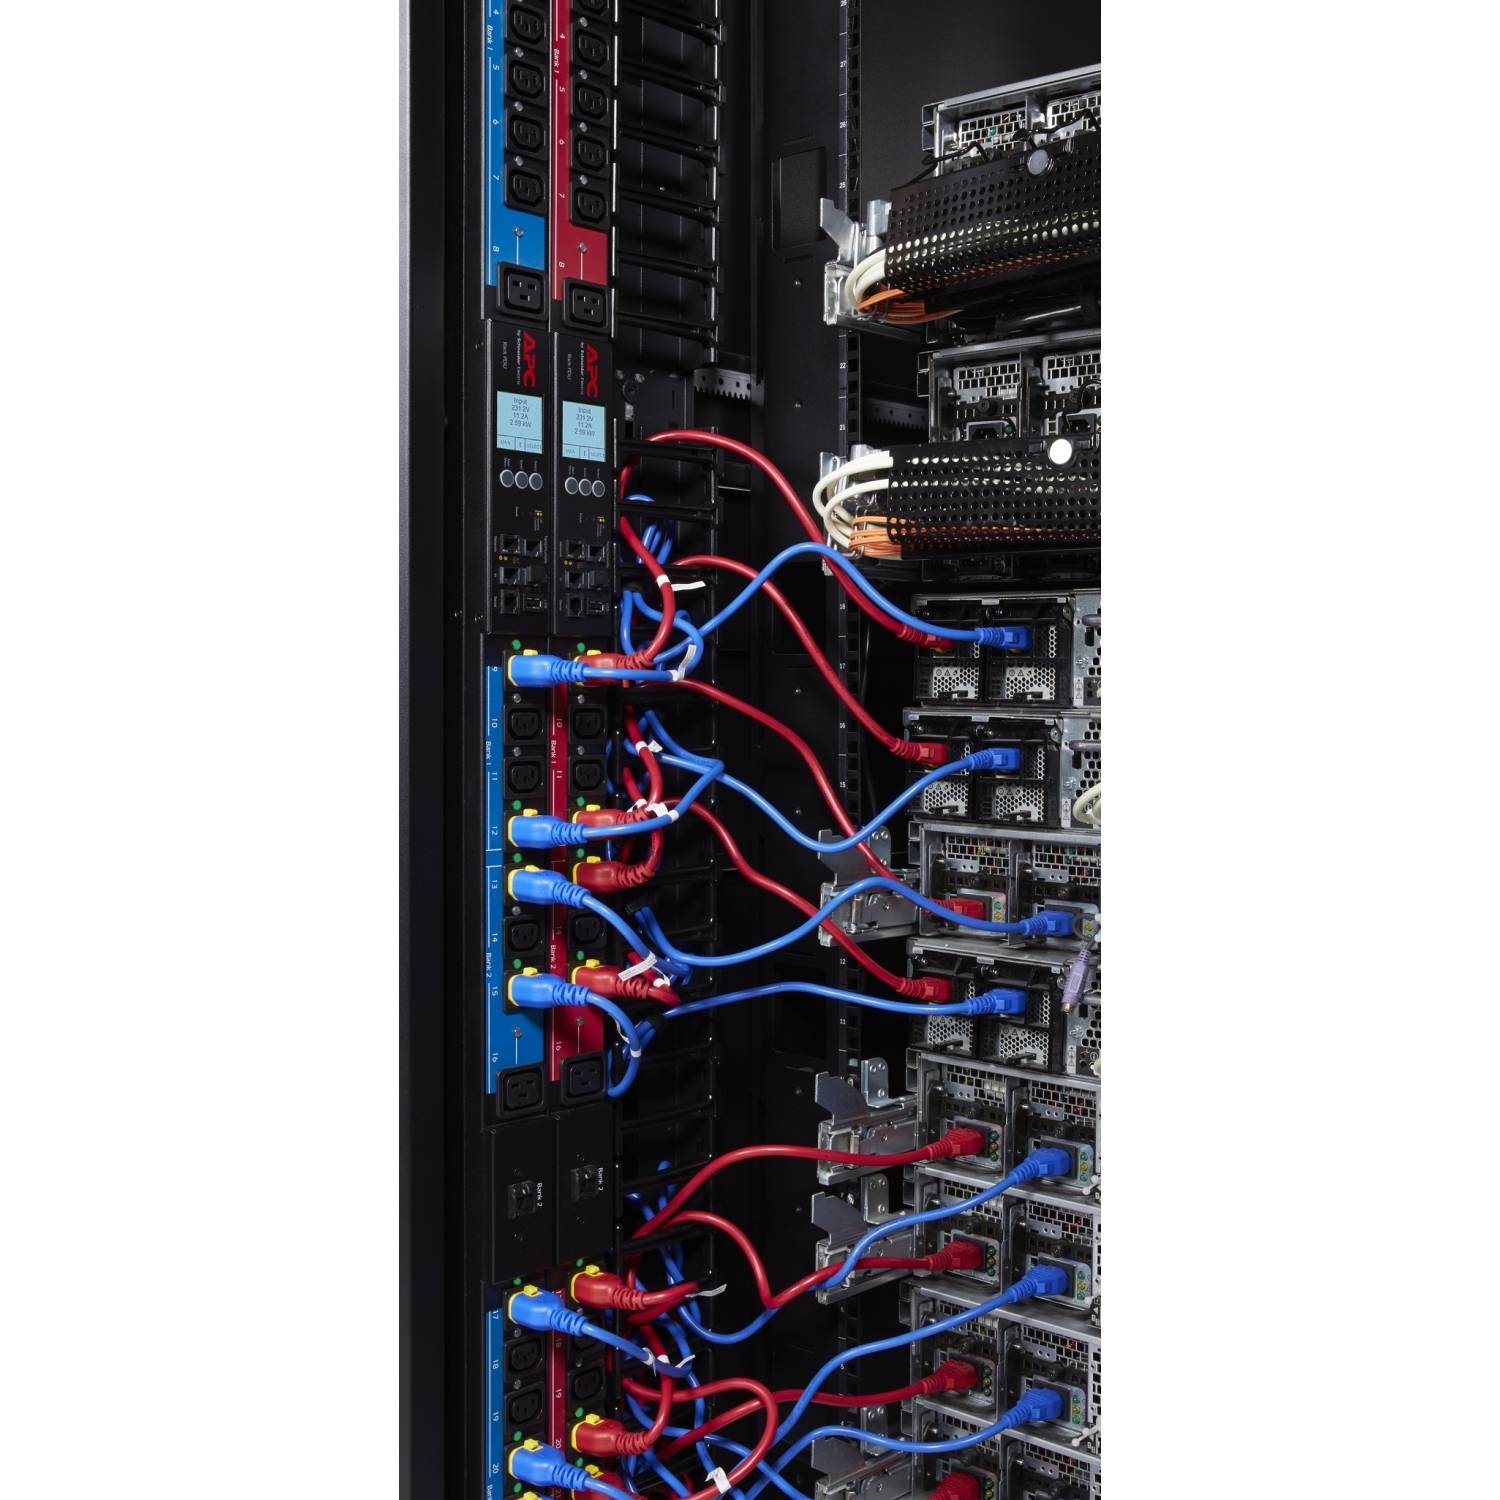 Rca Informatique - image du produit : POWER CORD KIT (6 EA) LOCKING C13 TO C14 0.6M BLUE